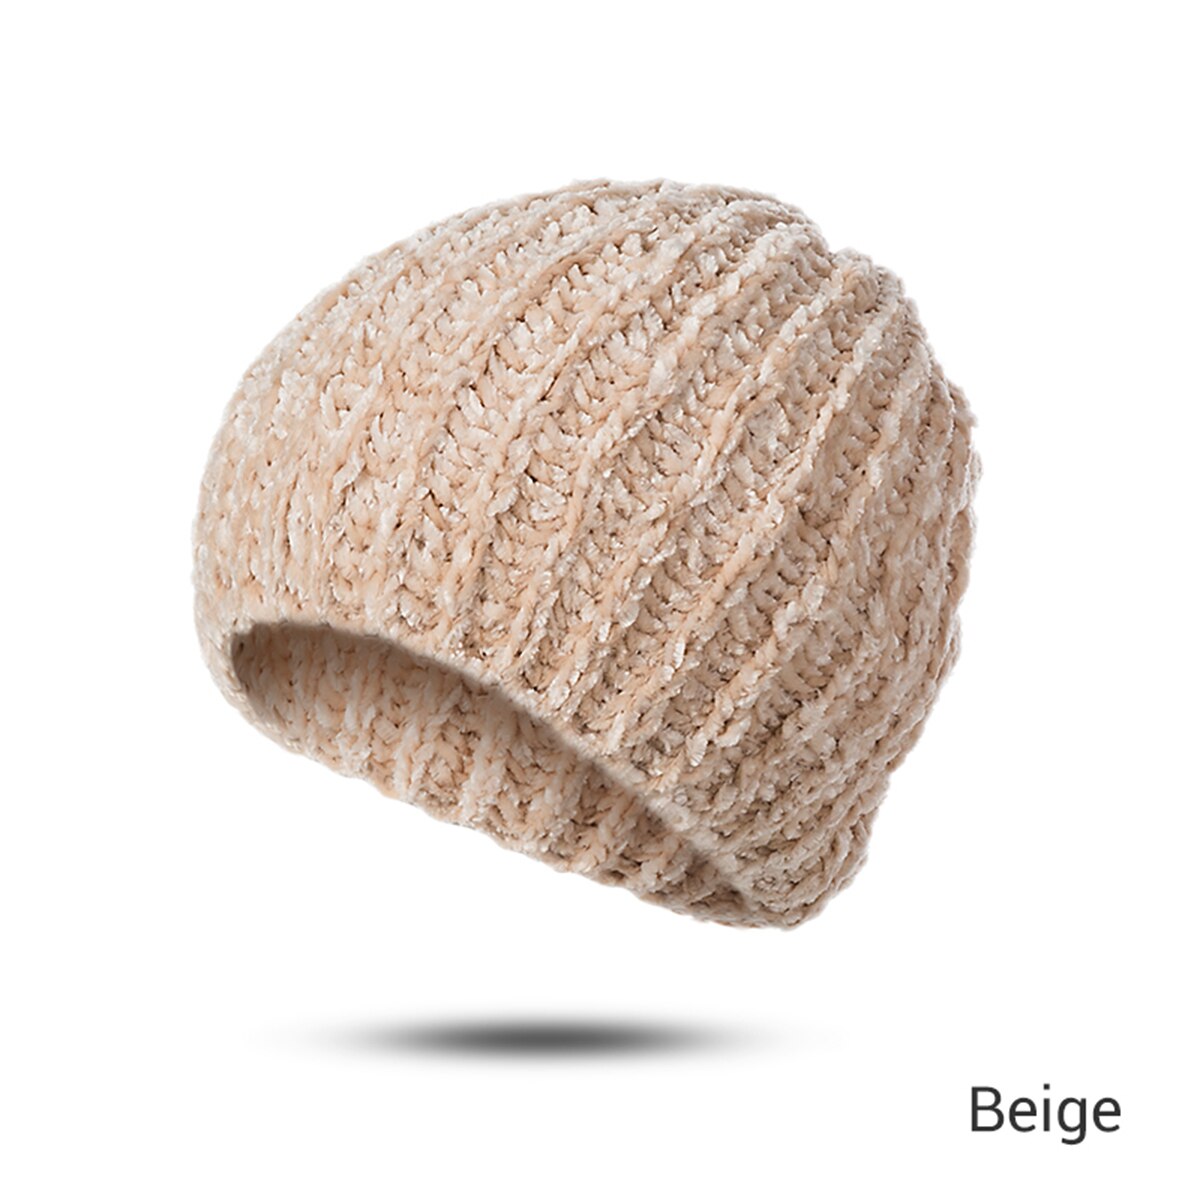 Mltbb vinter kvinder klassisk beanie hat vinter blød varm hatte til damer hækning hat ski cap chenille kranhætte kvindelig motorhjelm: Beige